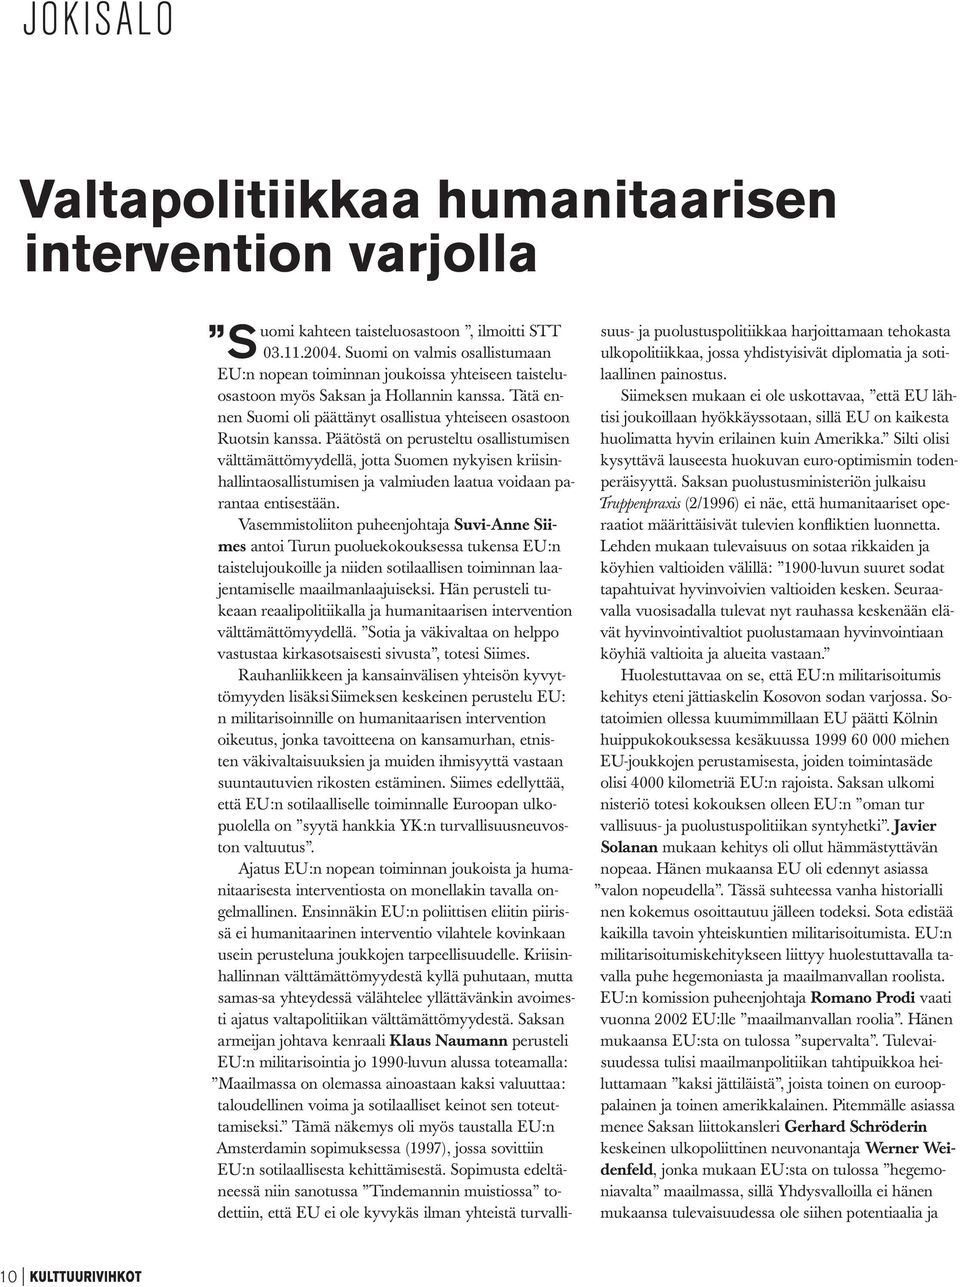 Päätöstä on perusteltu osallistumisen välttämättömyydellä, jotta Suomen nykyisen kriisinhallintaosallistumisen ja valmiuden laatua voidaan parantaa entisestään.